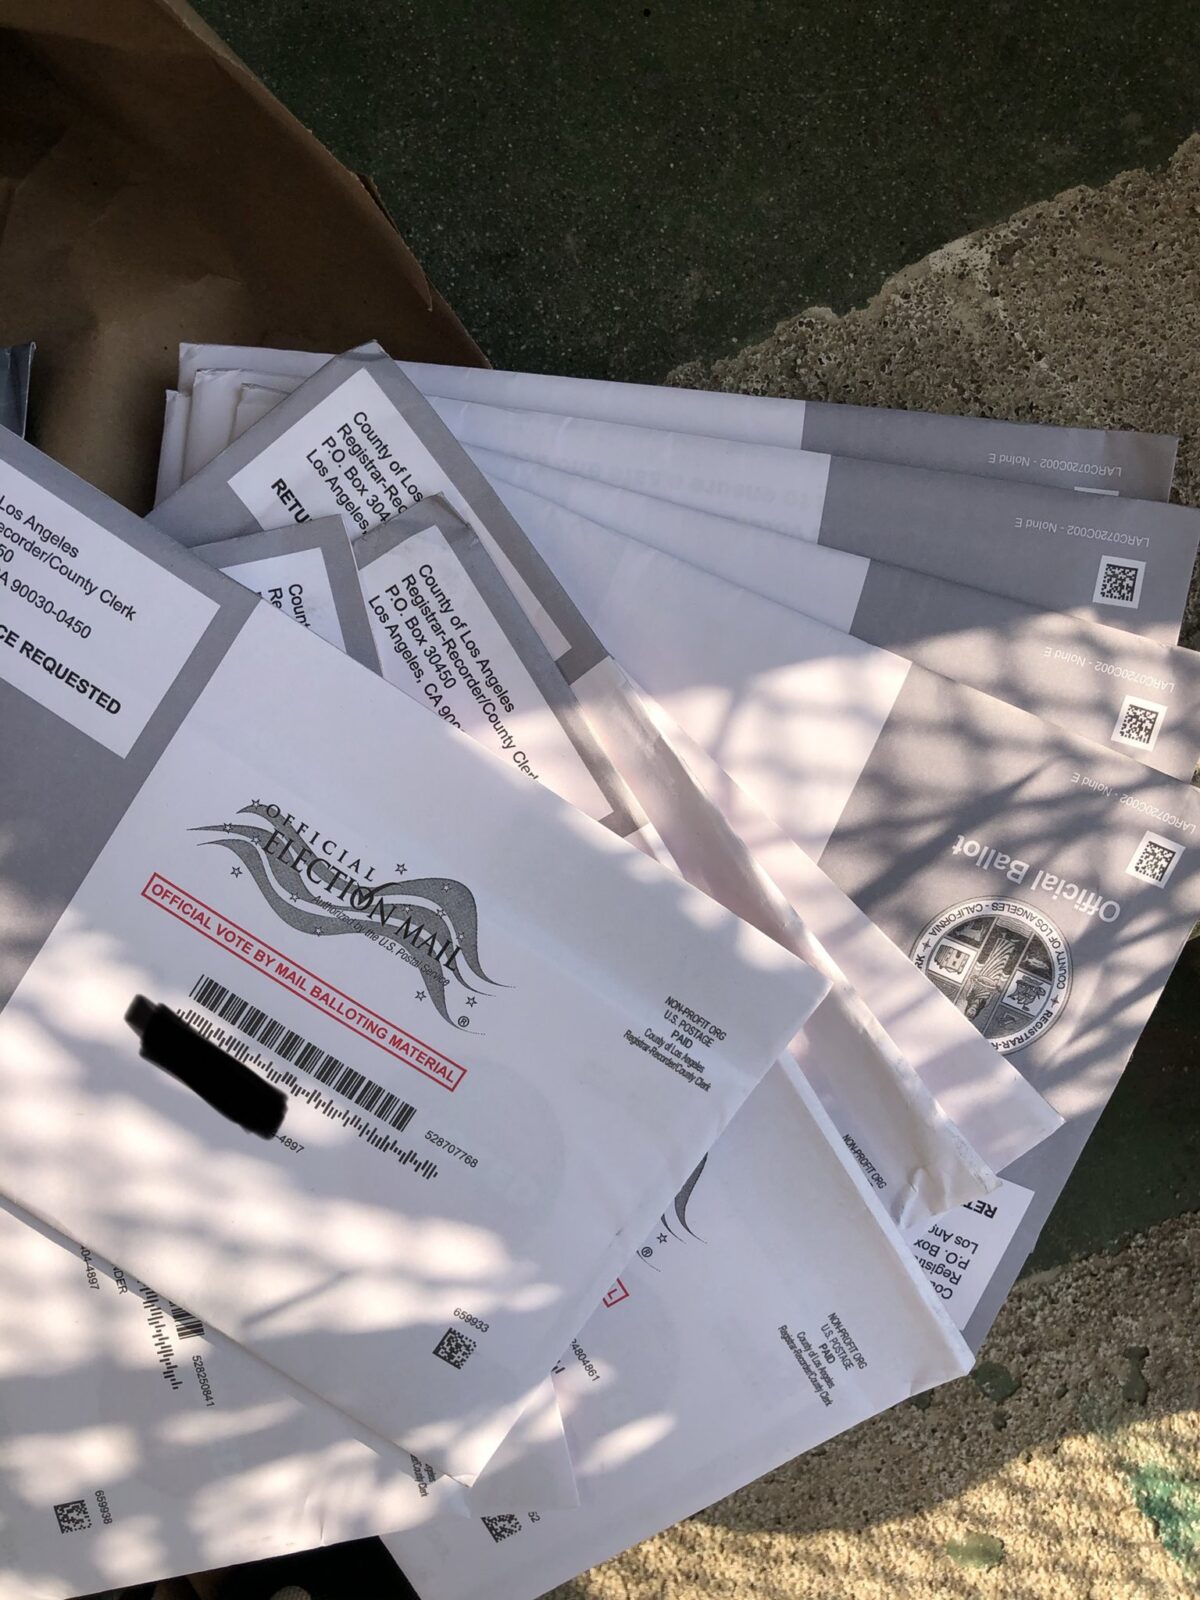 Các lá phiếu bị vứt bỏ đã được tìm thấy ở Santa Monica, California, ngày 8/10/2020. (Ảnh được sự cho phép của Osvaldo Jiménez)